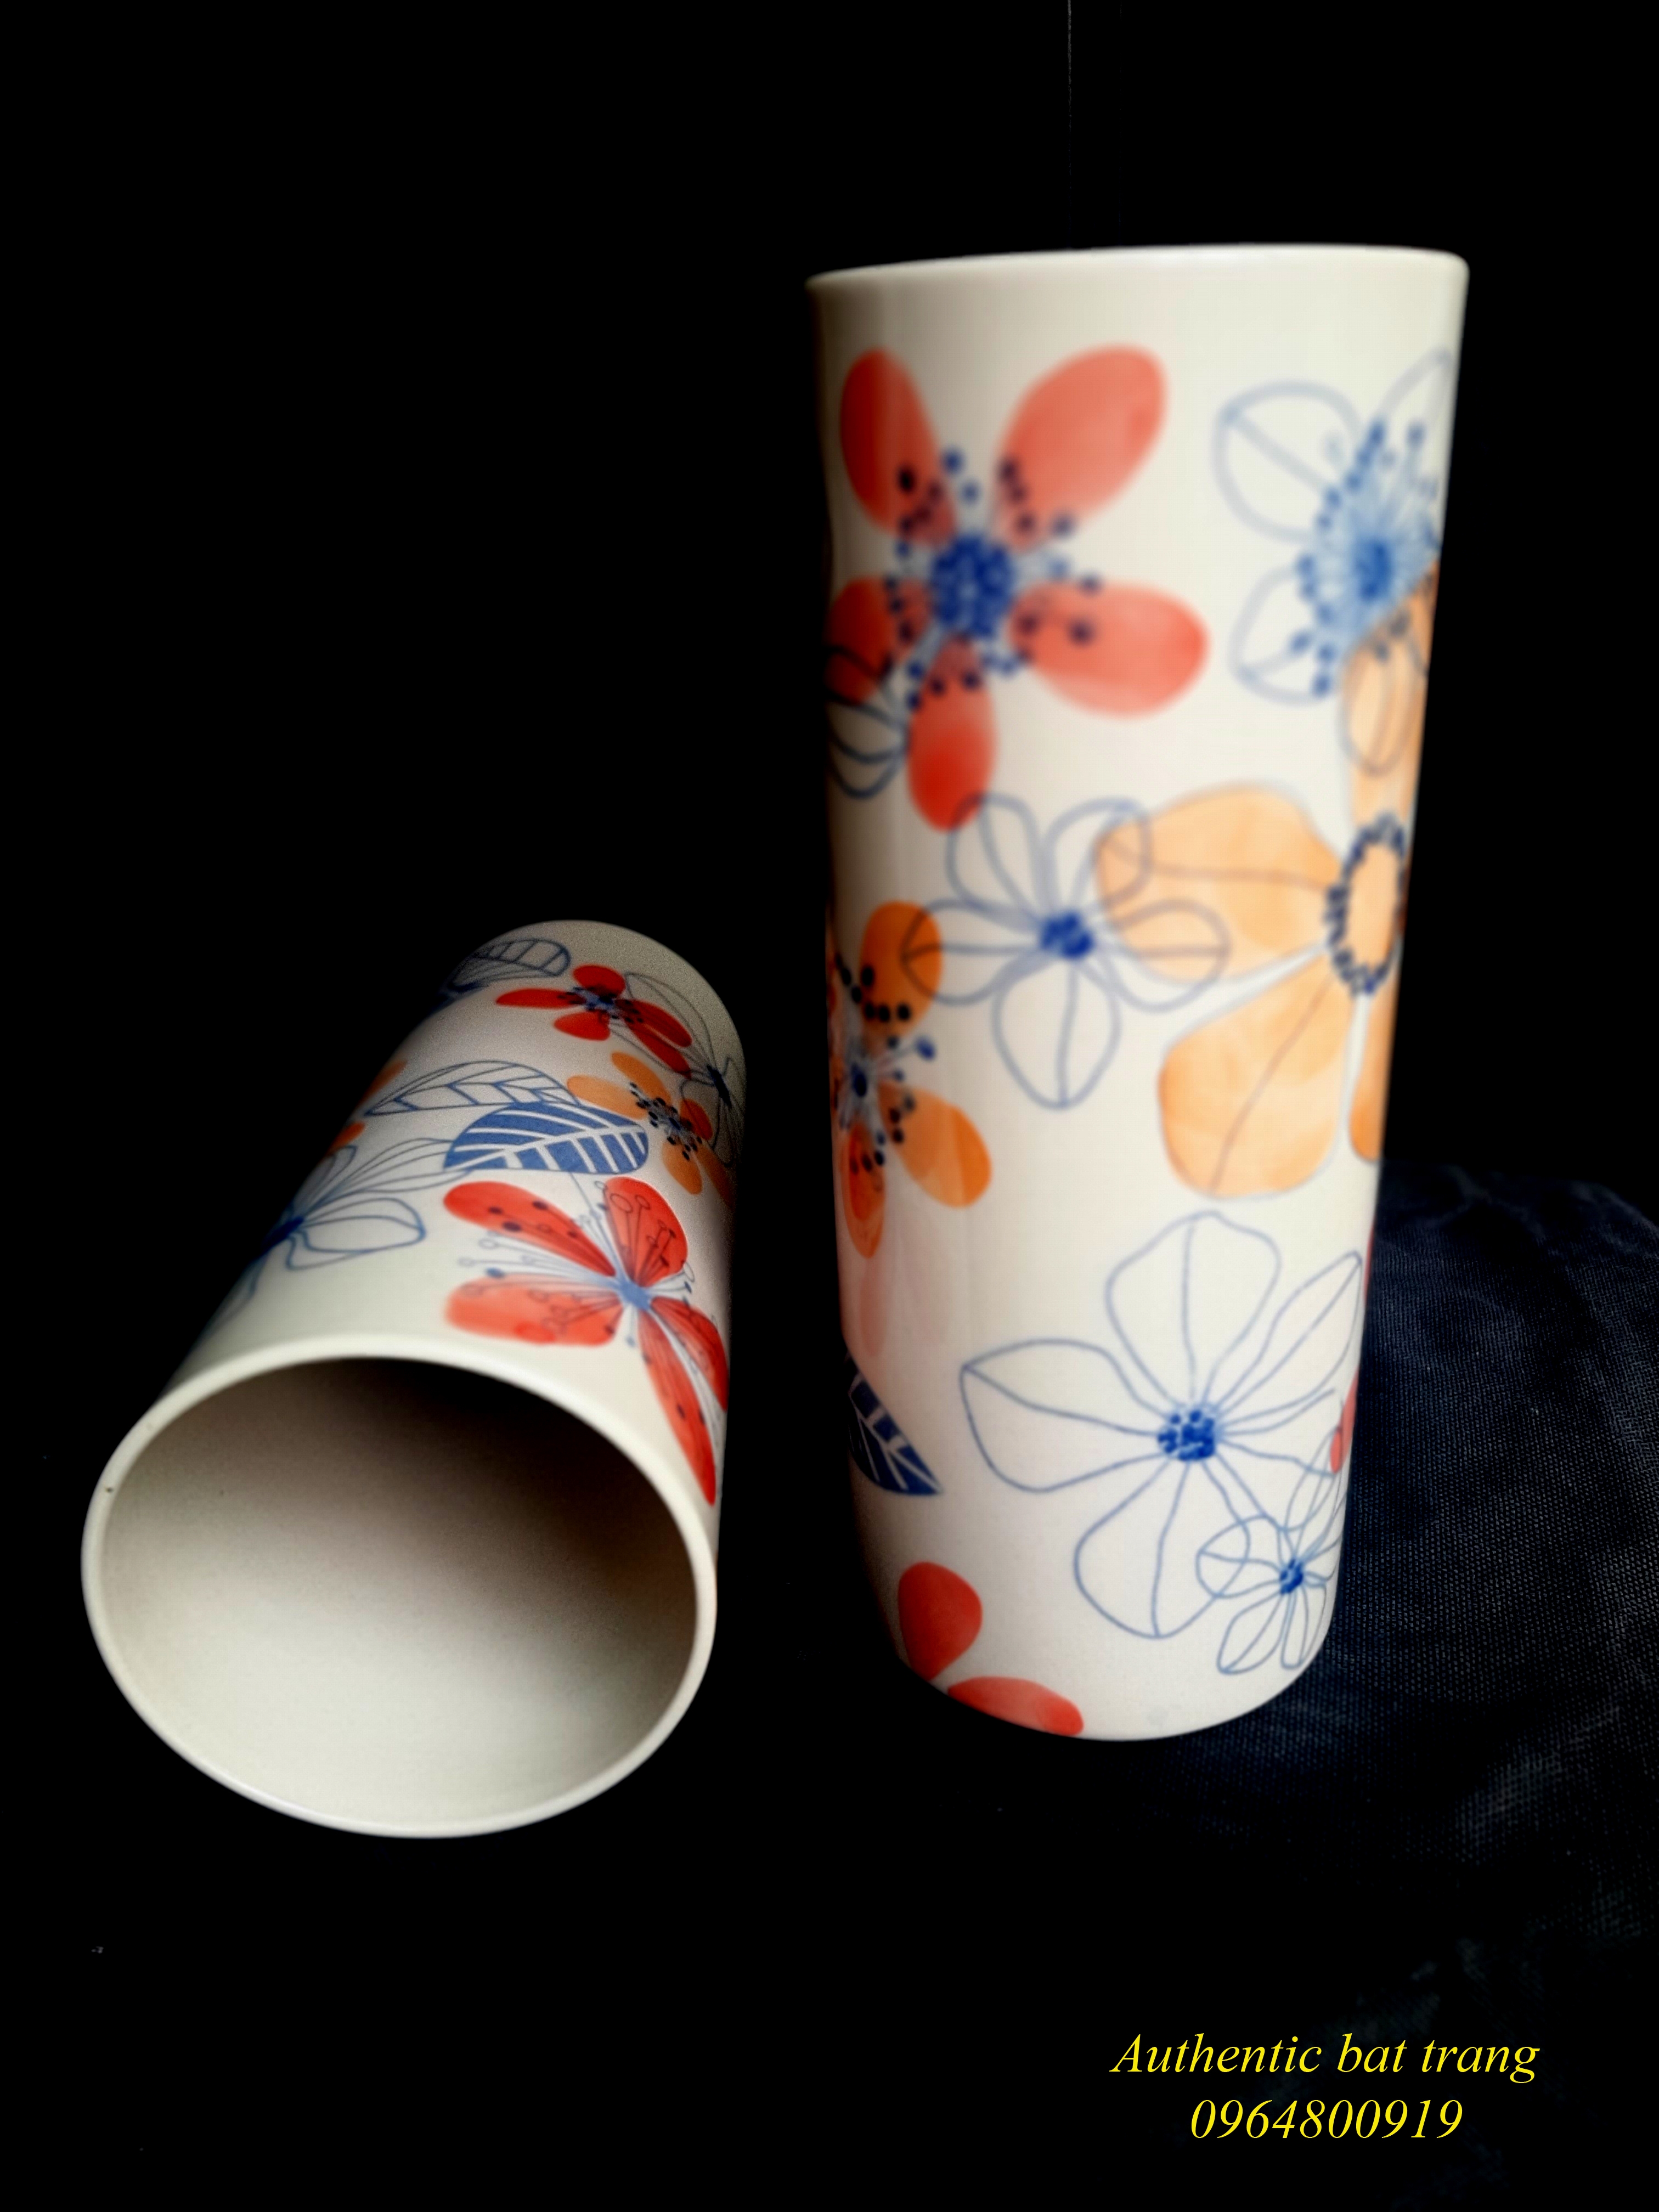 Hand painted ceramics vases/ Bình gốm trụ trụ cắm hoa sản phẩm vẽ tay thủ công sản xuất tại xưởng gốm sứ Authentic bat trang